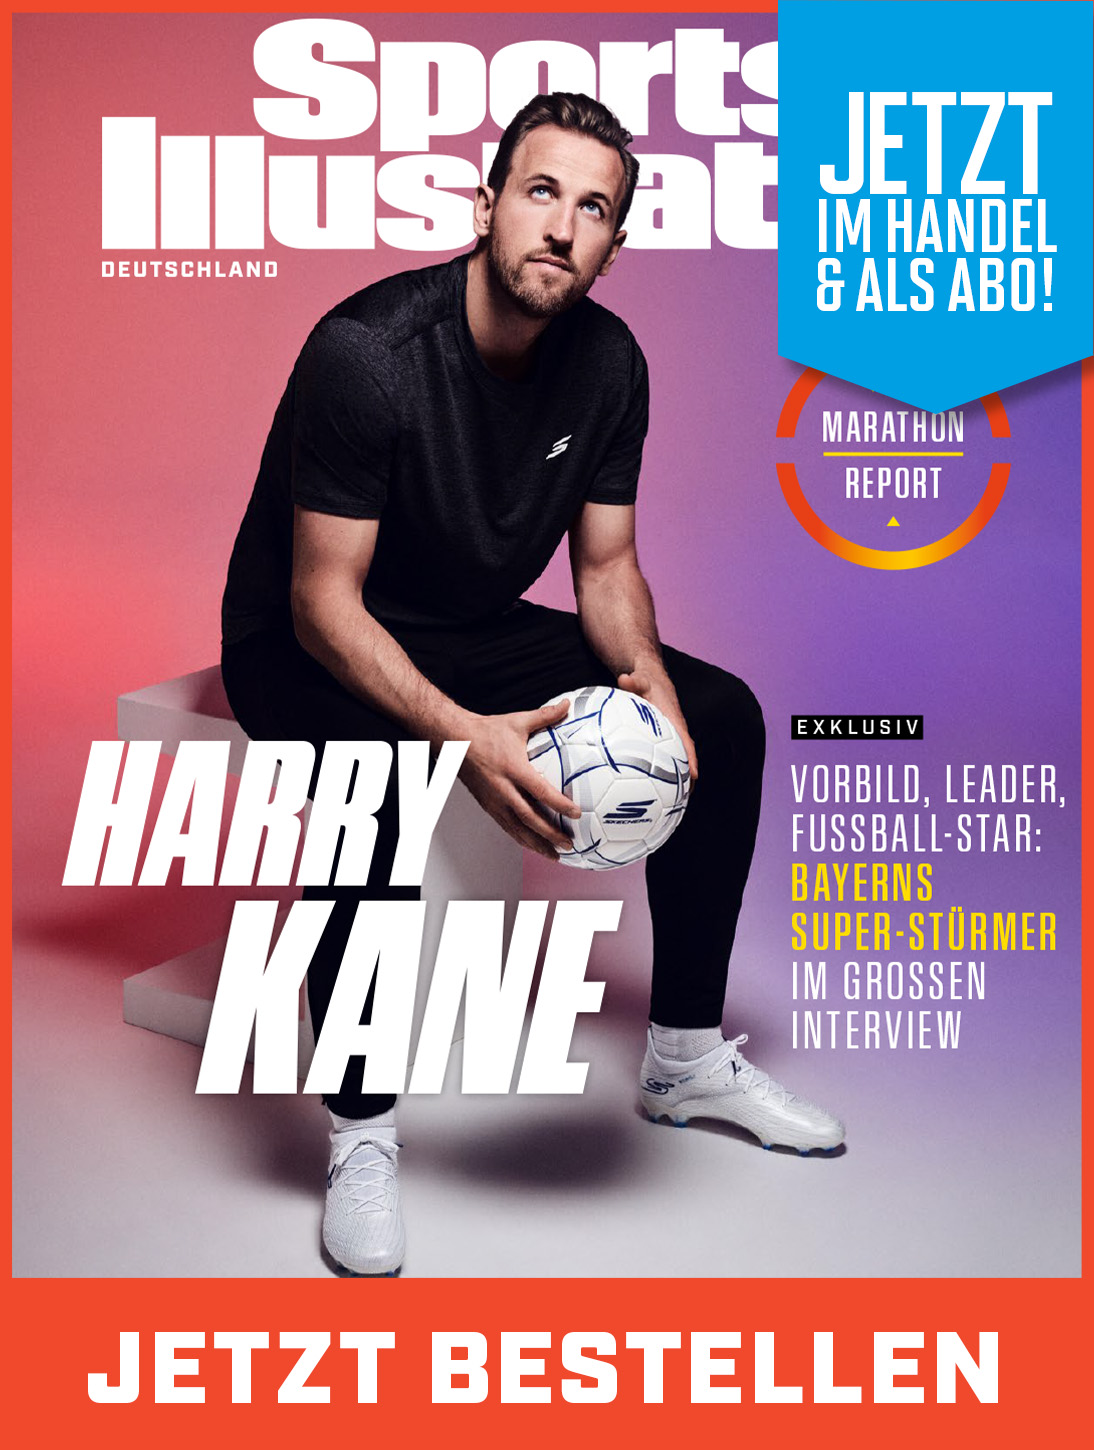 Die neue Sports Illustrated Ausgabe mit Bayern-Star Harry Kane